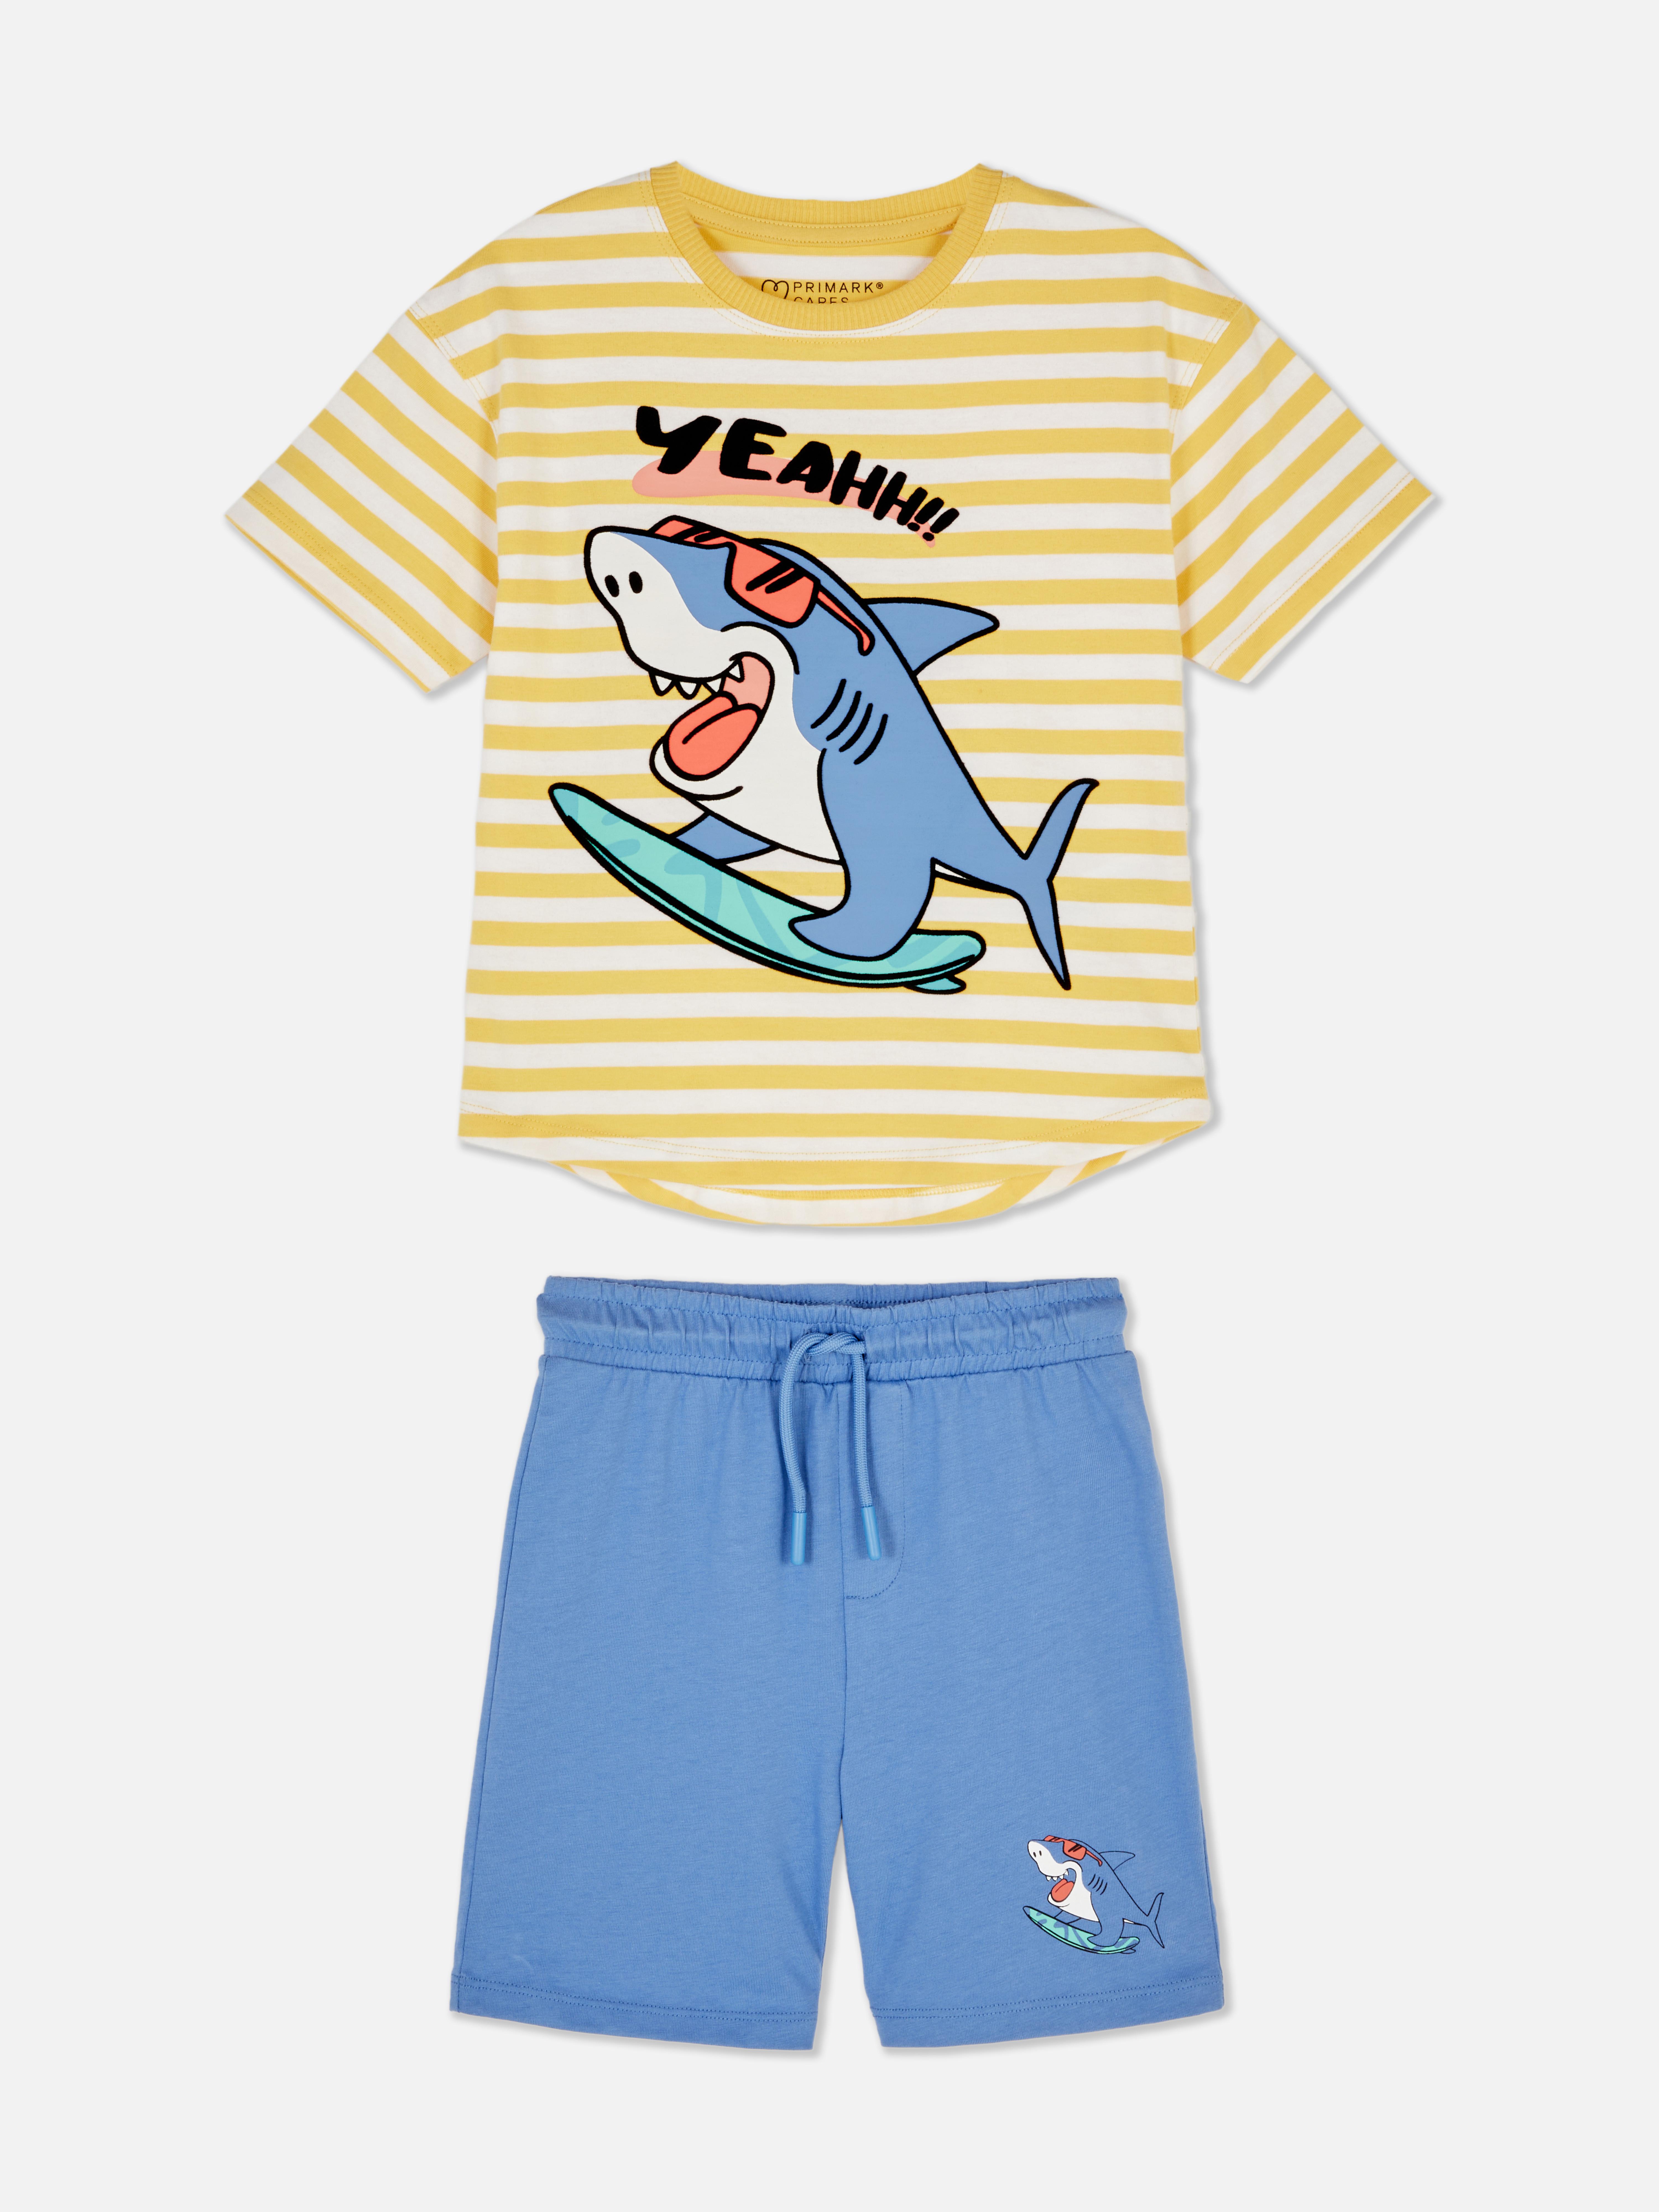 Shark T-shirt and Shorts Co-ord Set